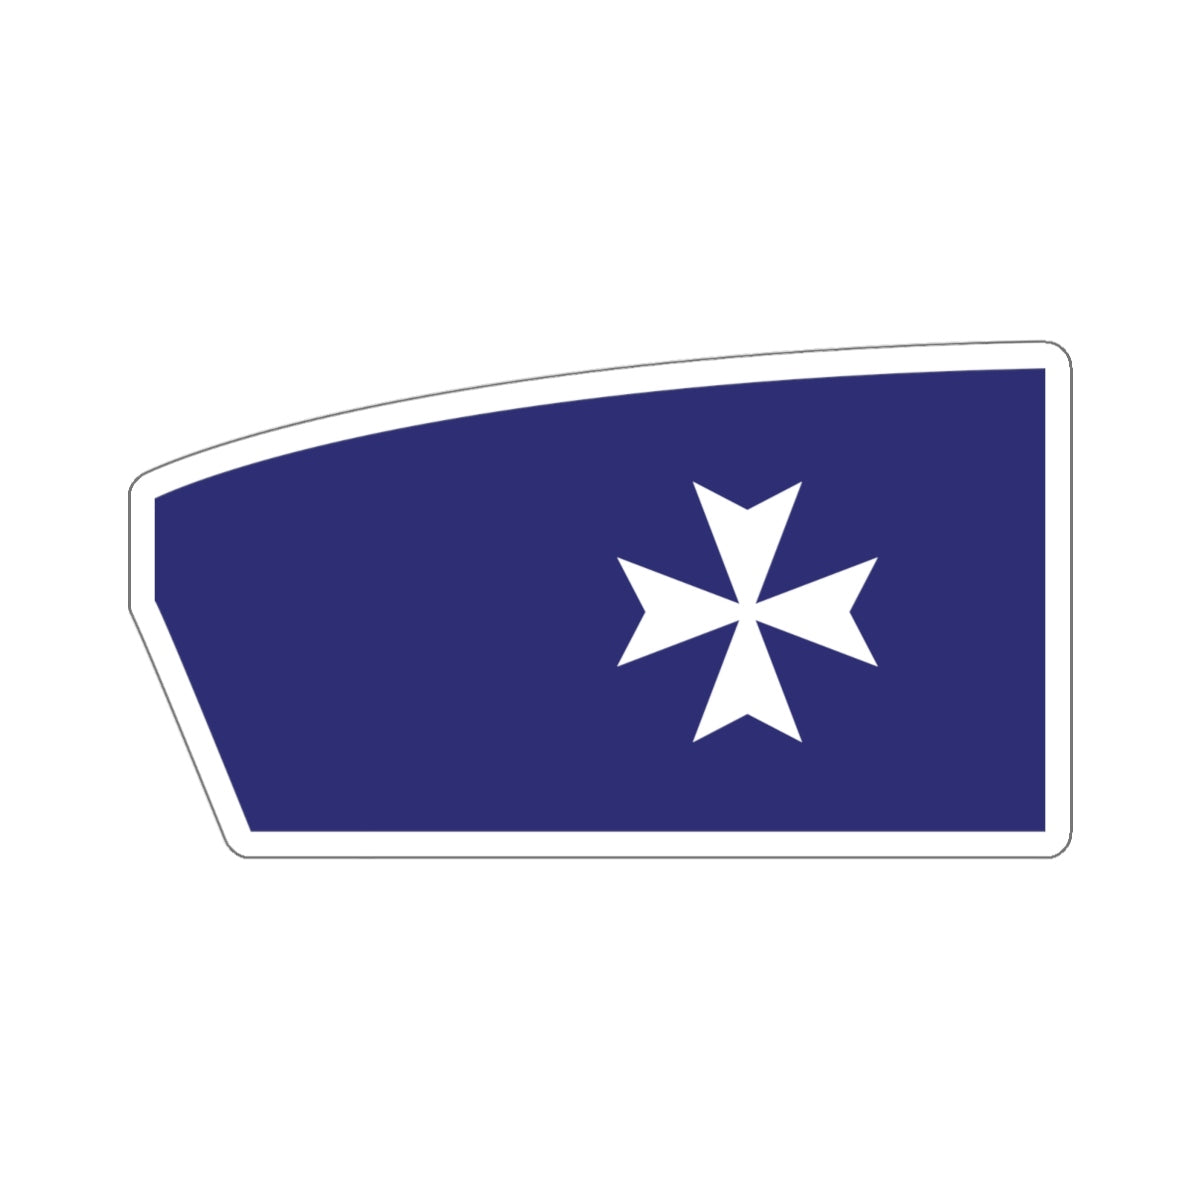 Malta Boat Club Sticker